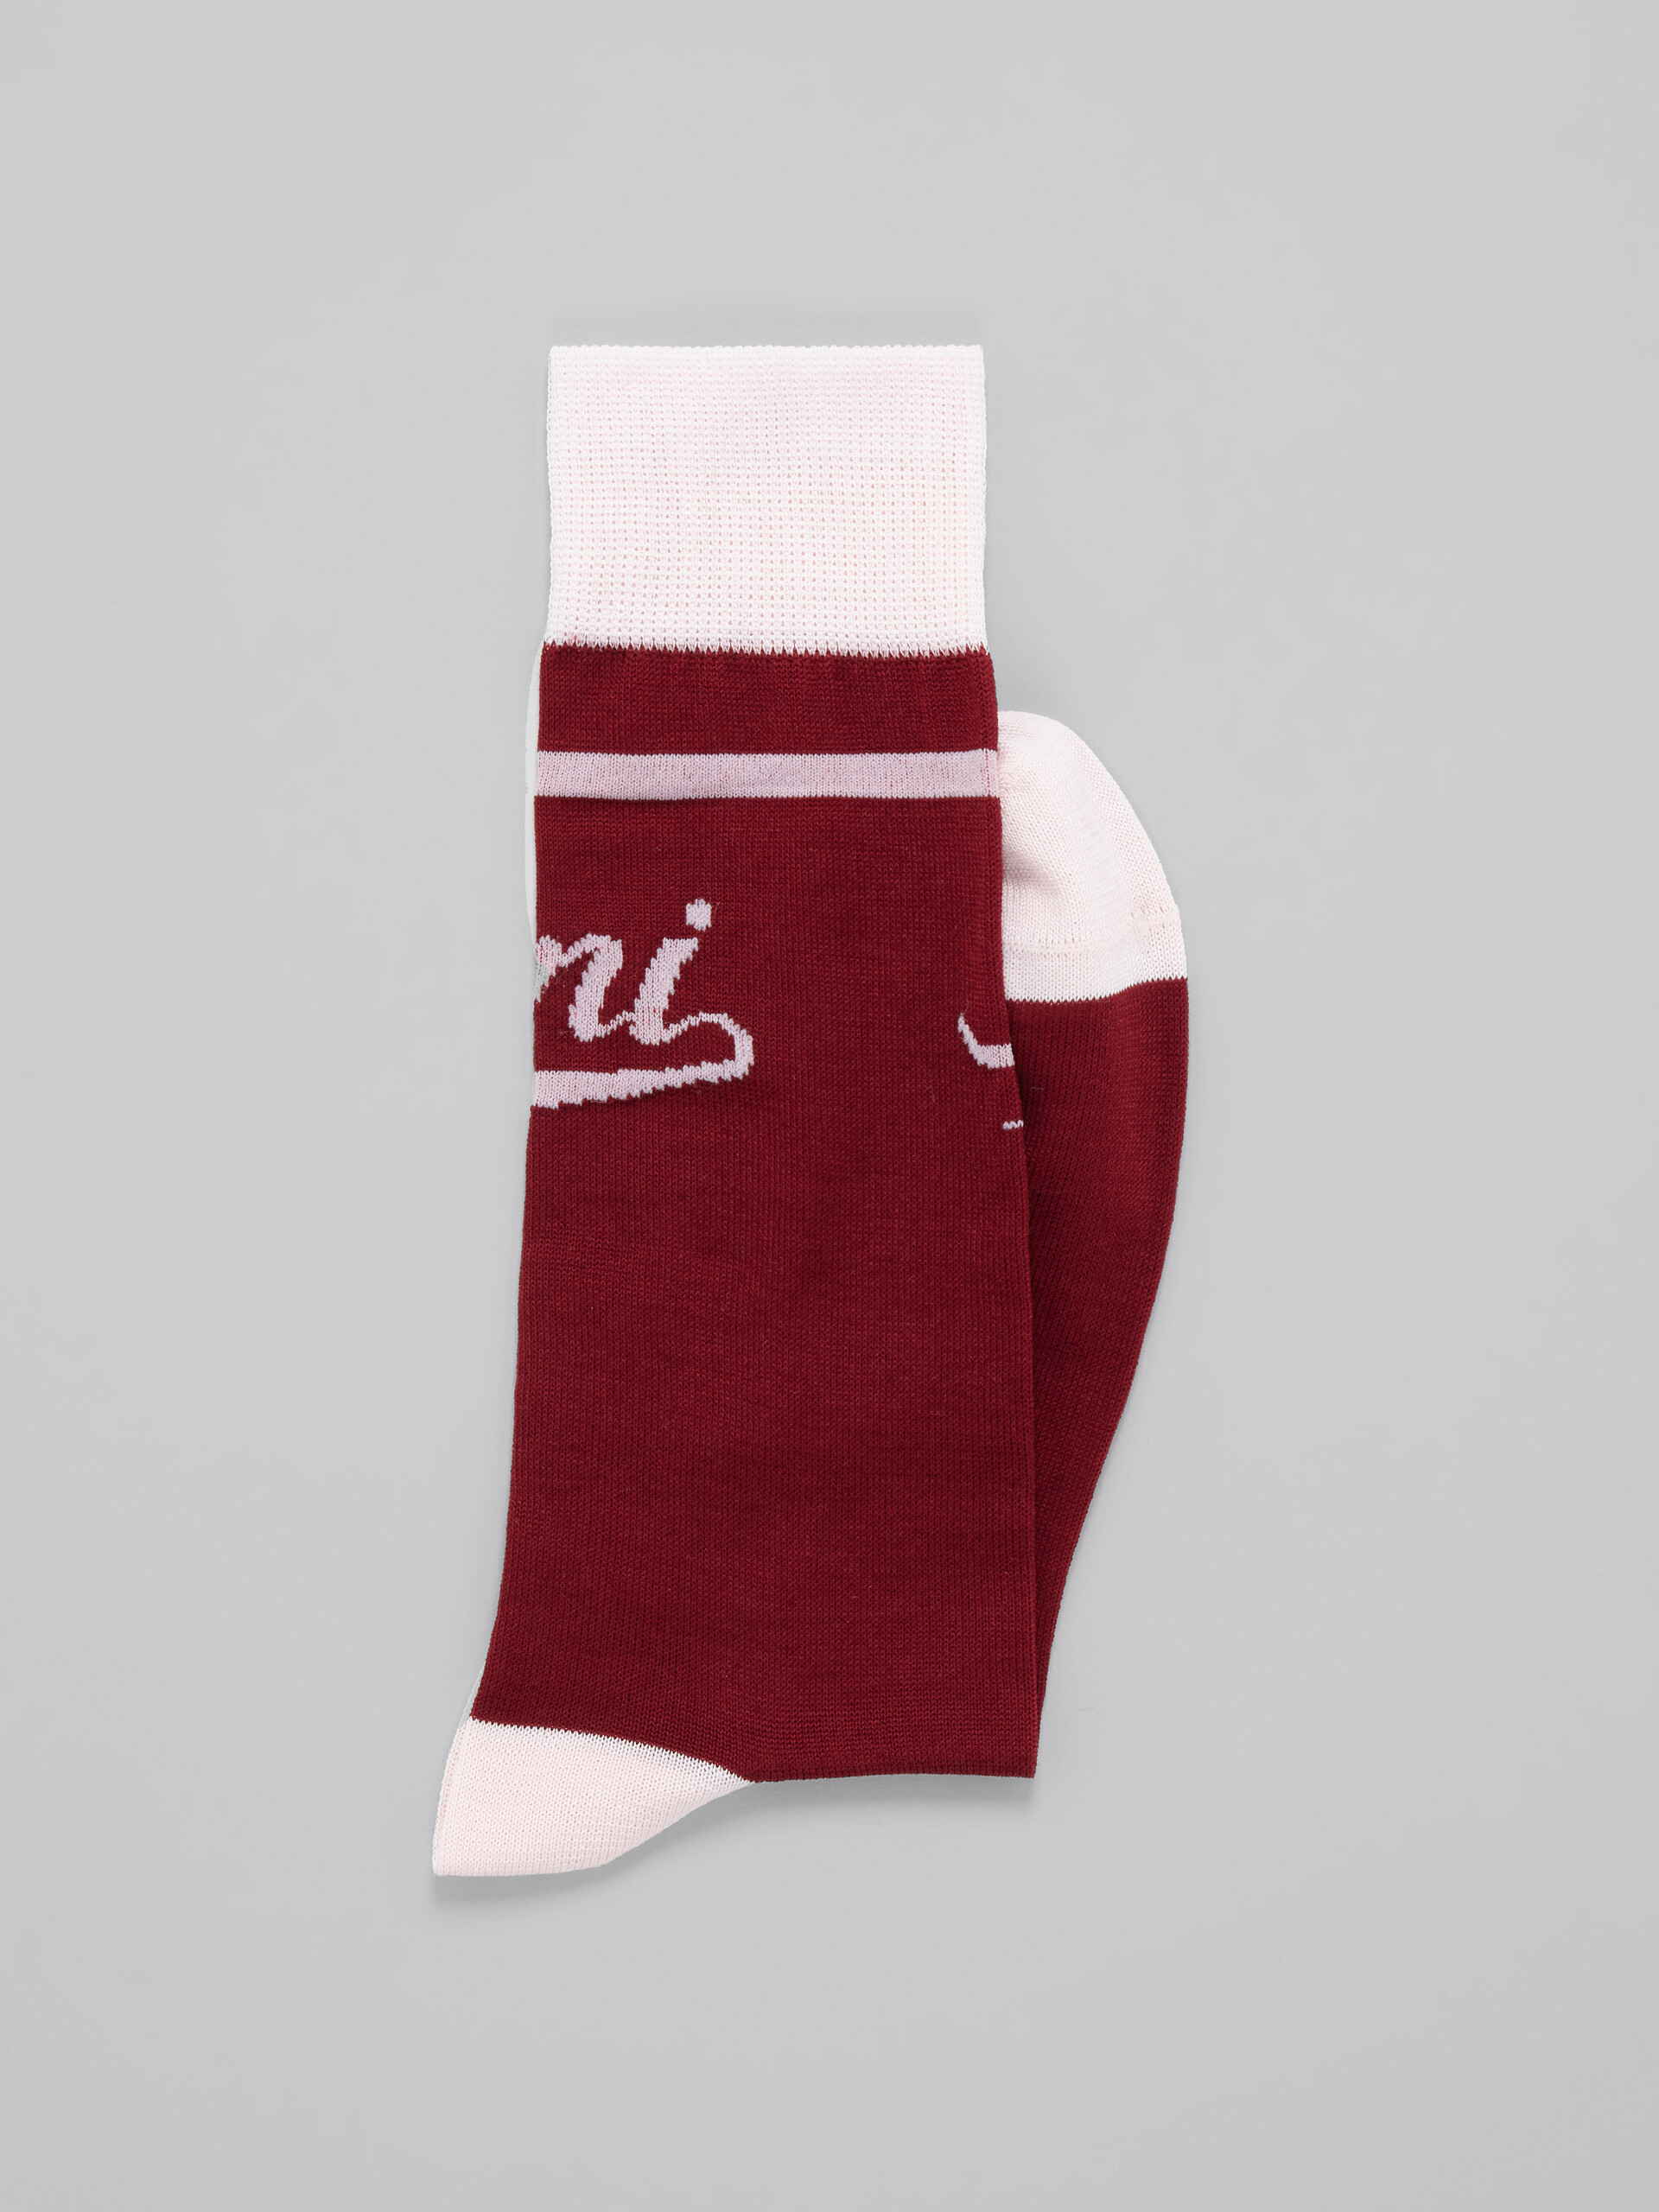 Burgundy and pink socks with logo - Socks - Image 2